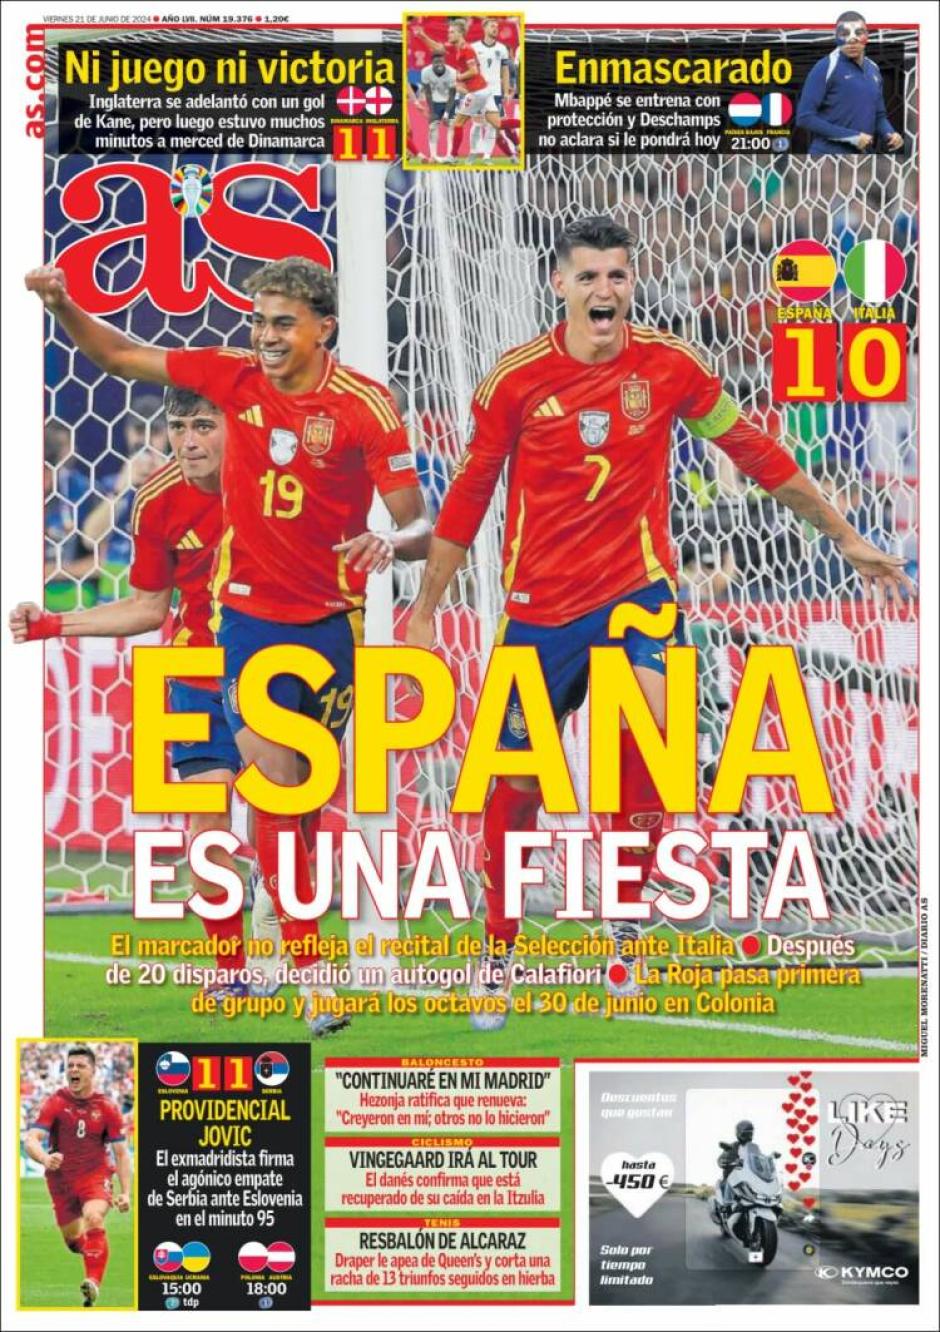 En España, los deportivos celebran el gran partido colectivo de España, por mucho que el gol llegara en un acción desafortunada de los italianos